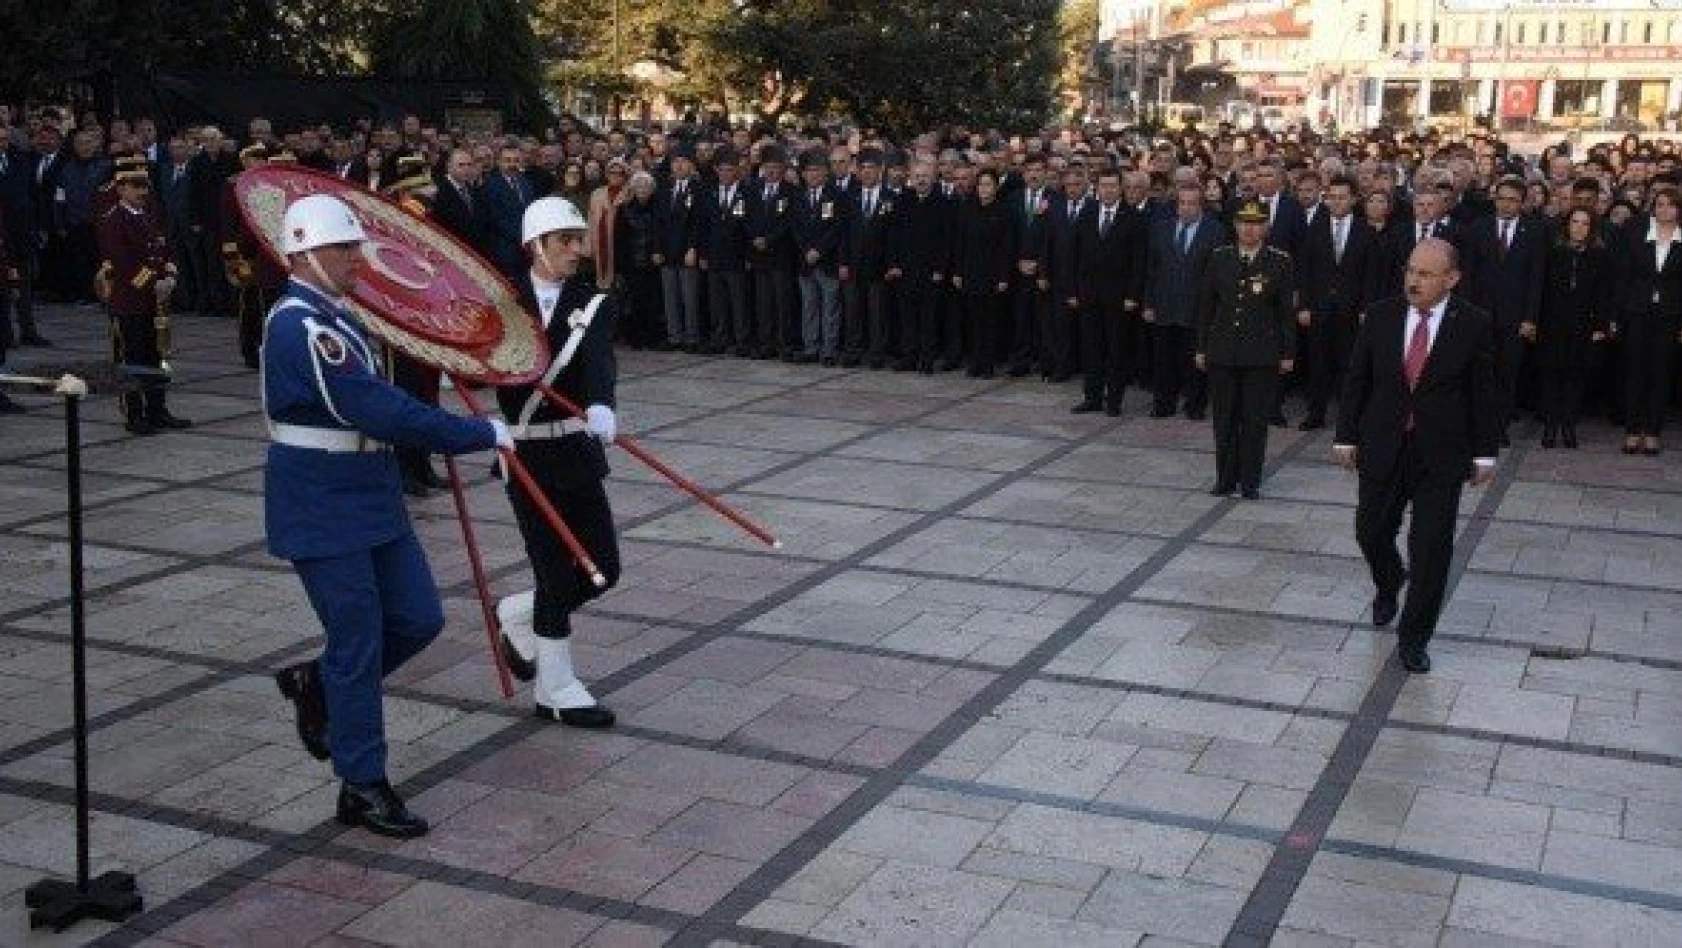 Büyük Önder Atatürk, ebediyete intikalinin 81'inci yılında törenle anıldı